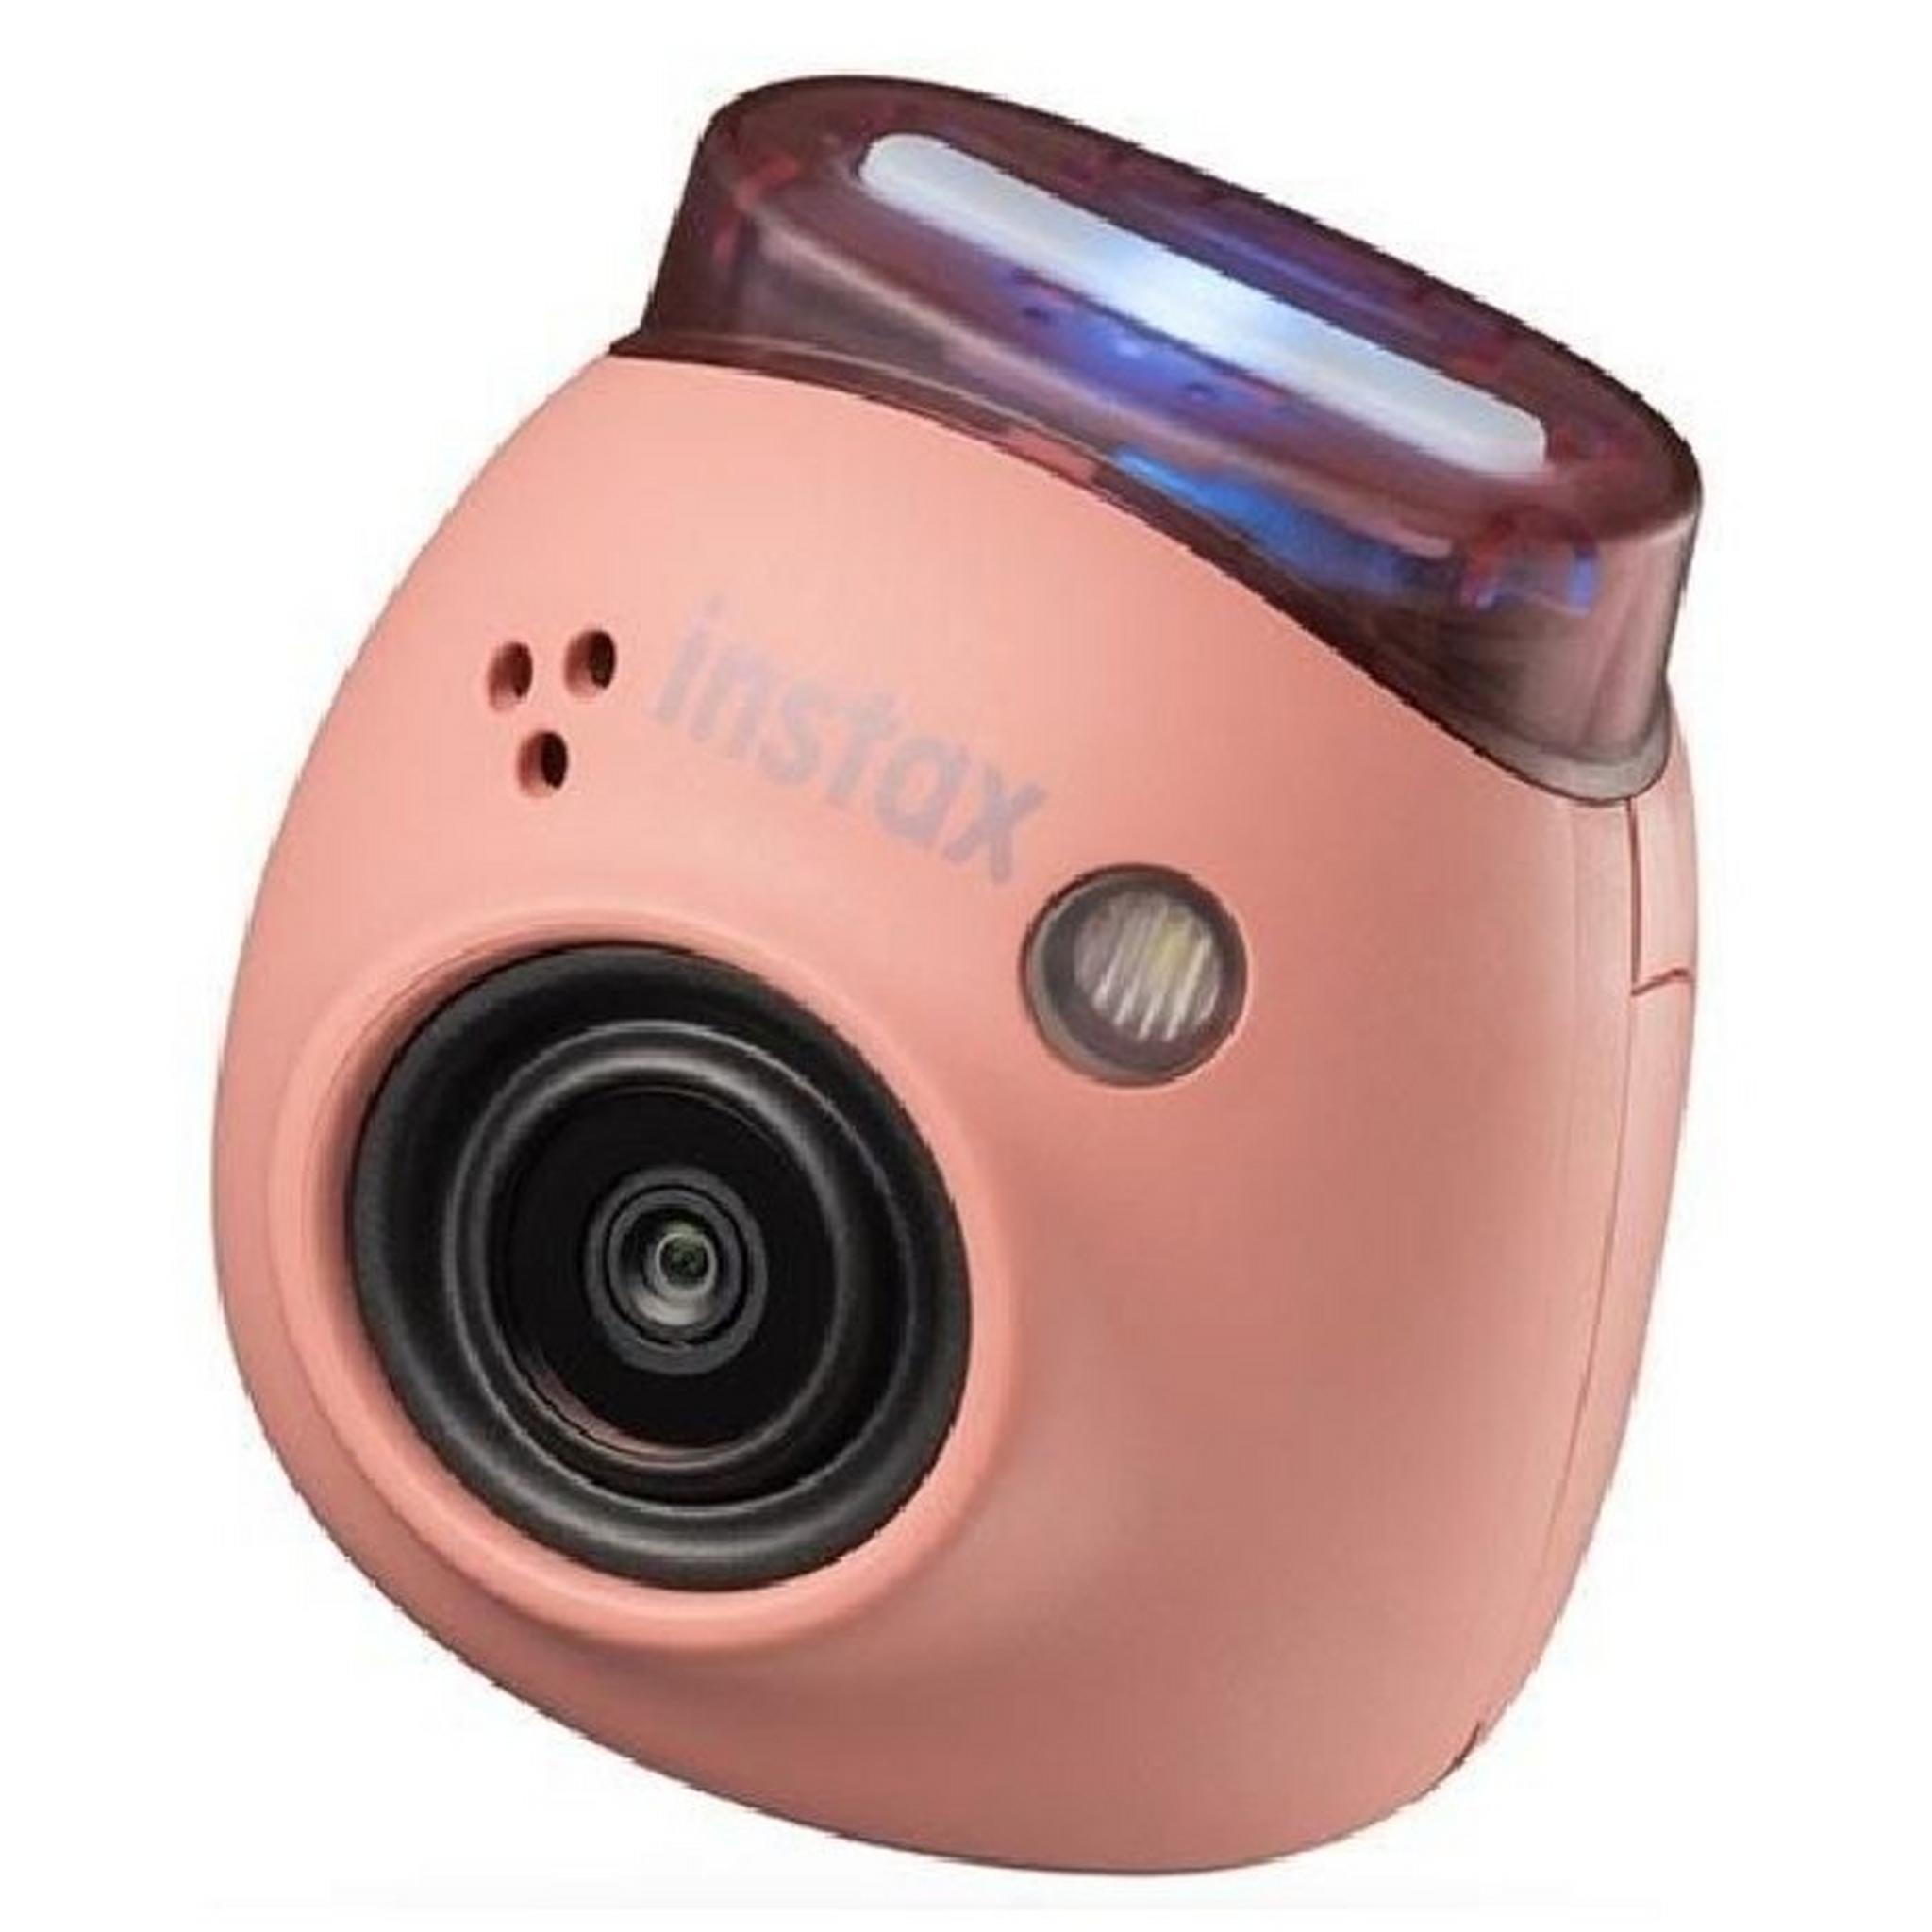 Fujifilm Instax PAL Digital Camera - Pink